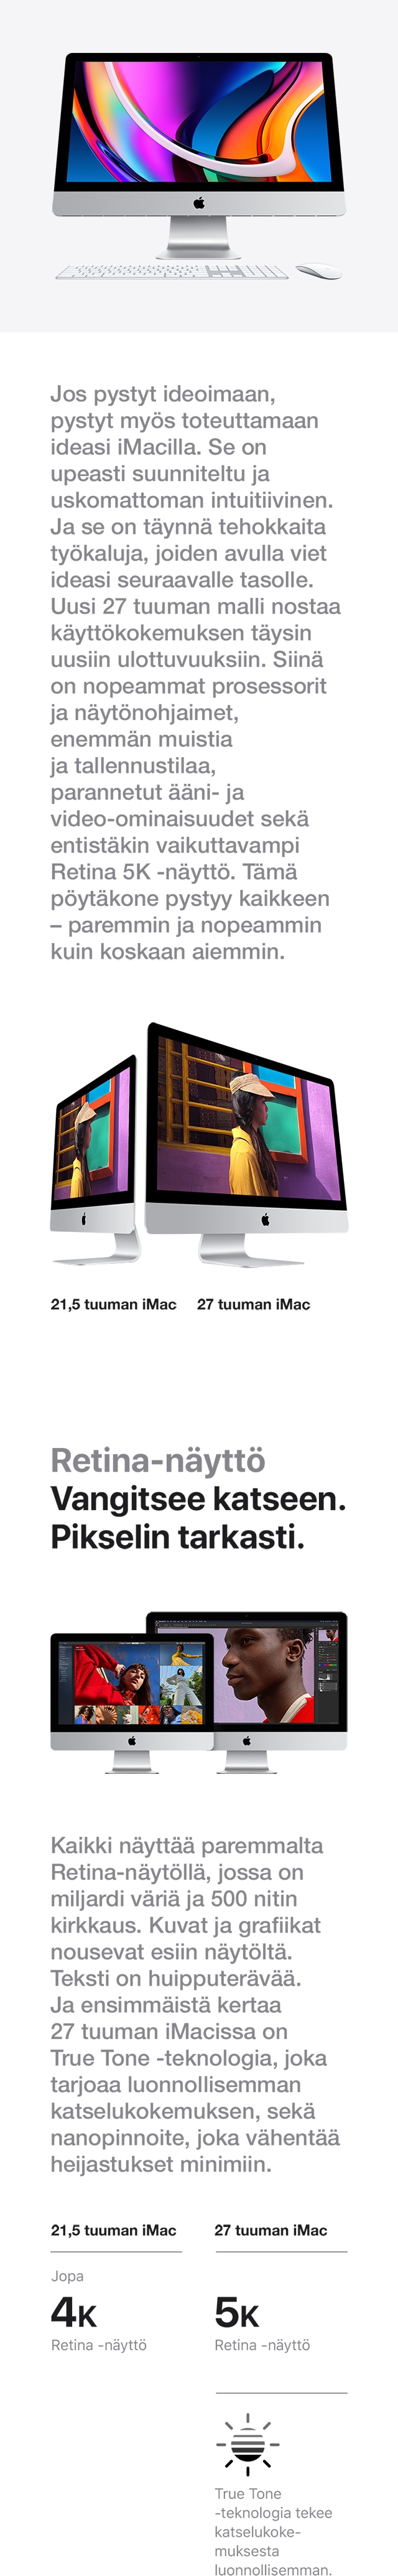 Uusi iMac on suorituskyvyltään nopeampi, tallennustilaltaan tilavampi, ominaisuuksiltaan monipuolisempi ja käyttökokemukseltaan intuitiivisempi. Valitse sinulle sopiva Apple iMac kahdesta vaihtoehdosta: 27 tuuman iMac Retina 5K -näytöllä tai 21.5 tuuman iMac Retina 4K-näytöllä.